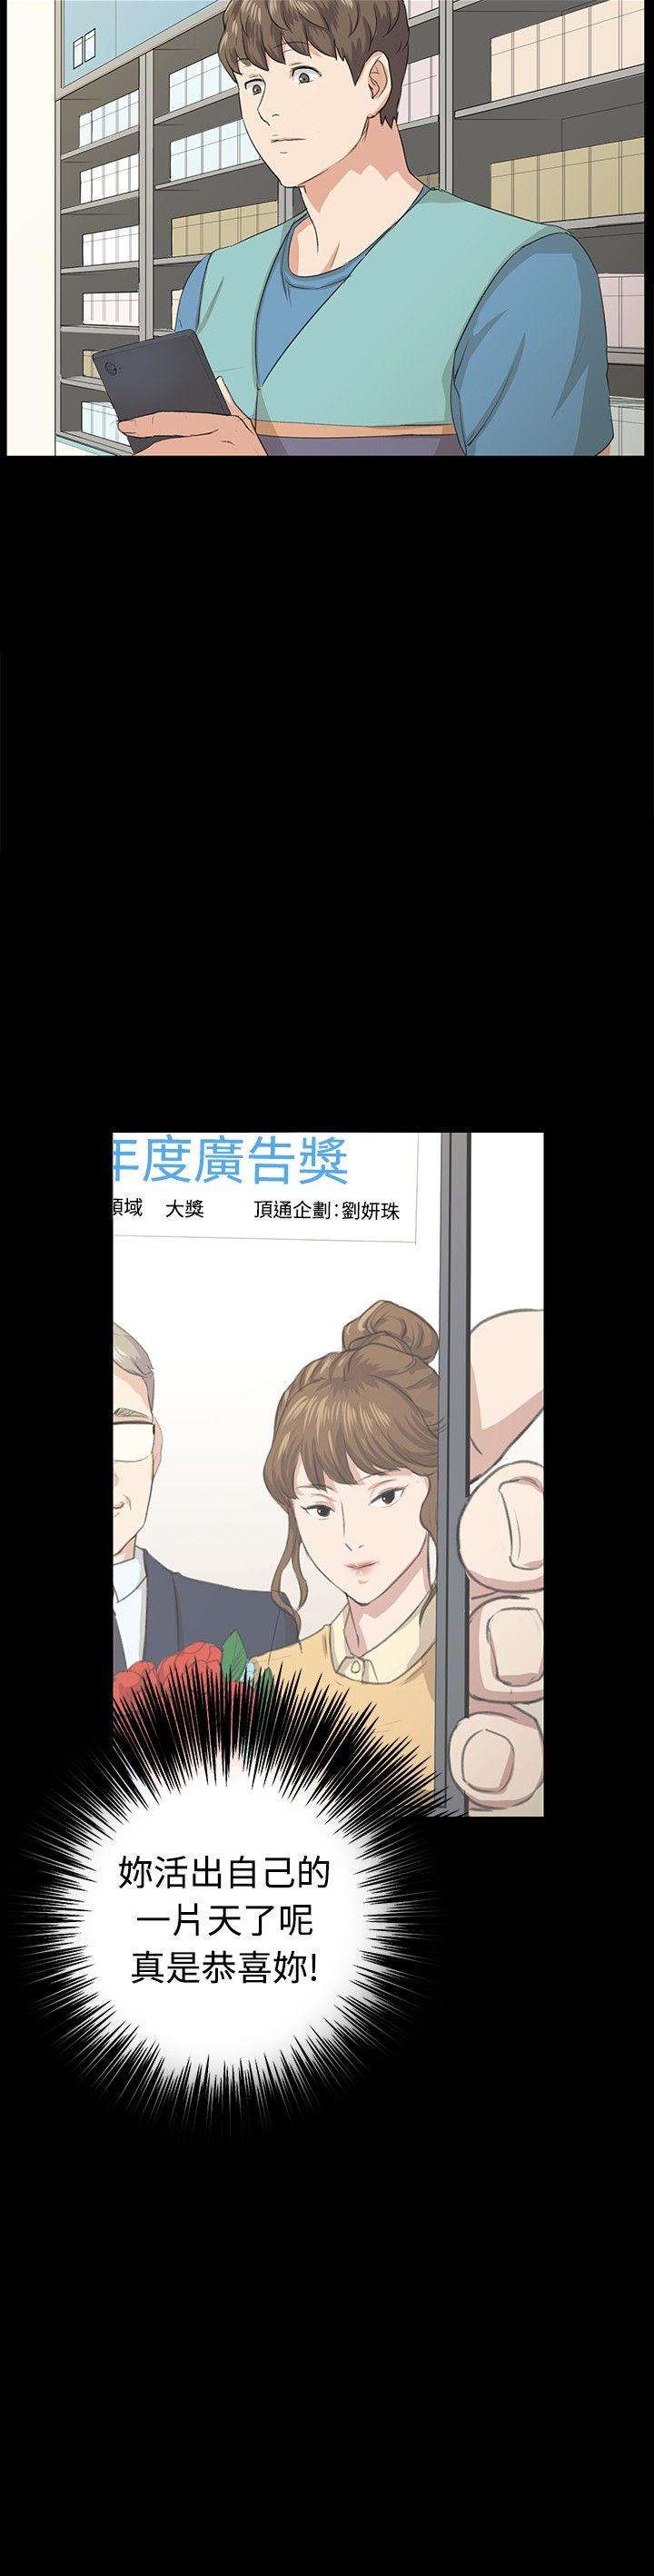 韩国污漫画 深夜便利店 最终话 3